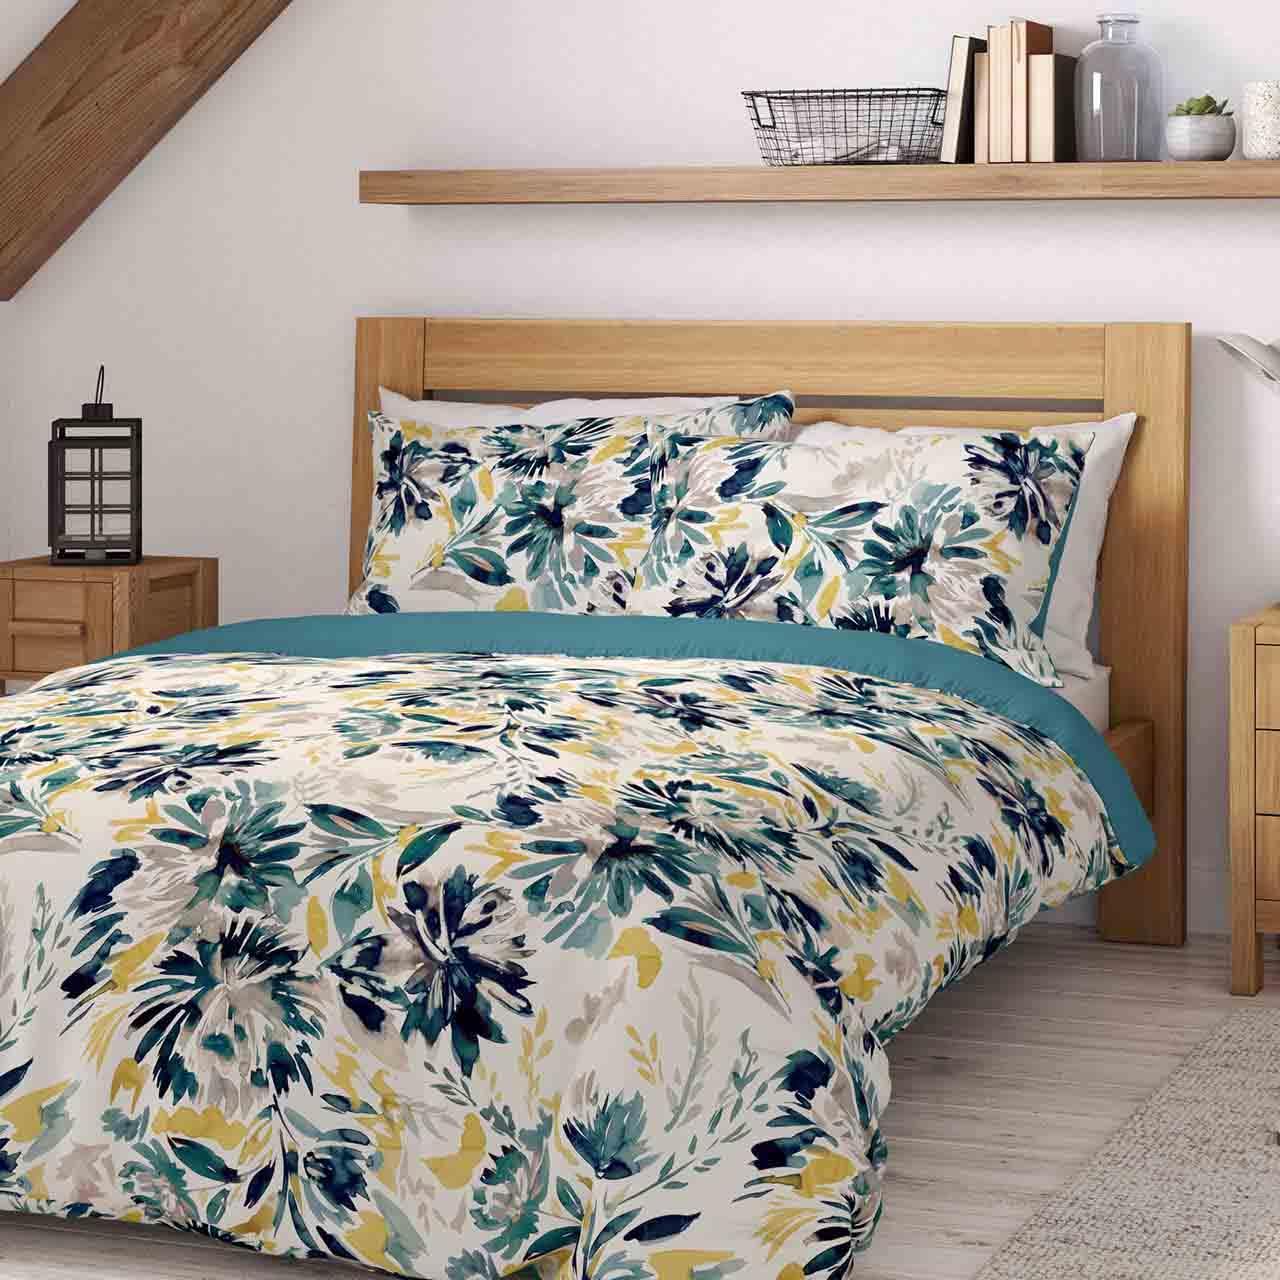 M&S Pure Cotton Watercolour Floral Bedding Set, Single, Teal